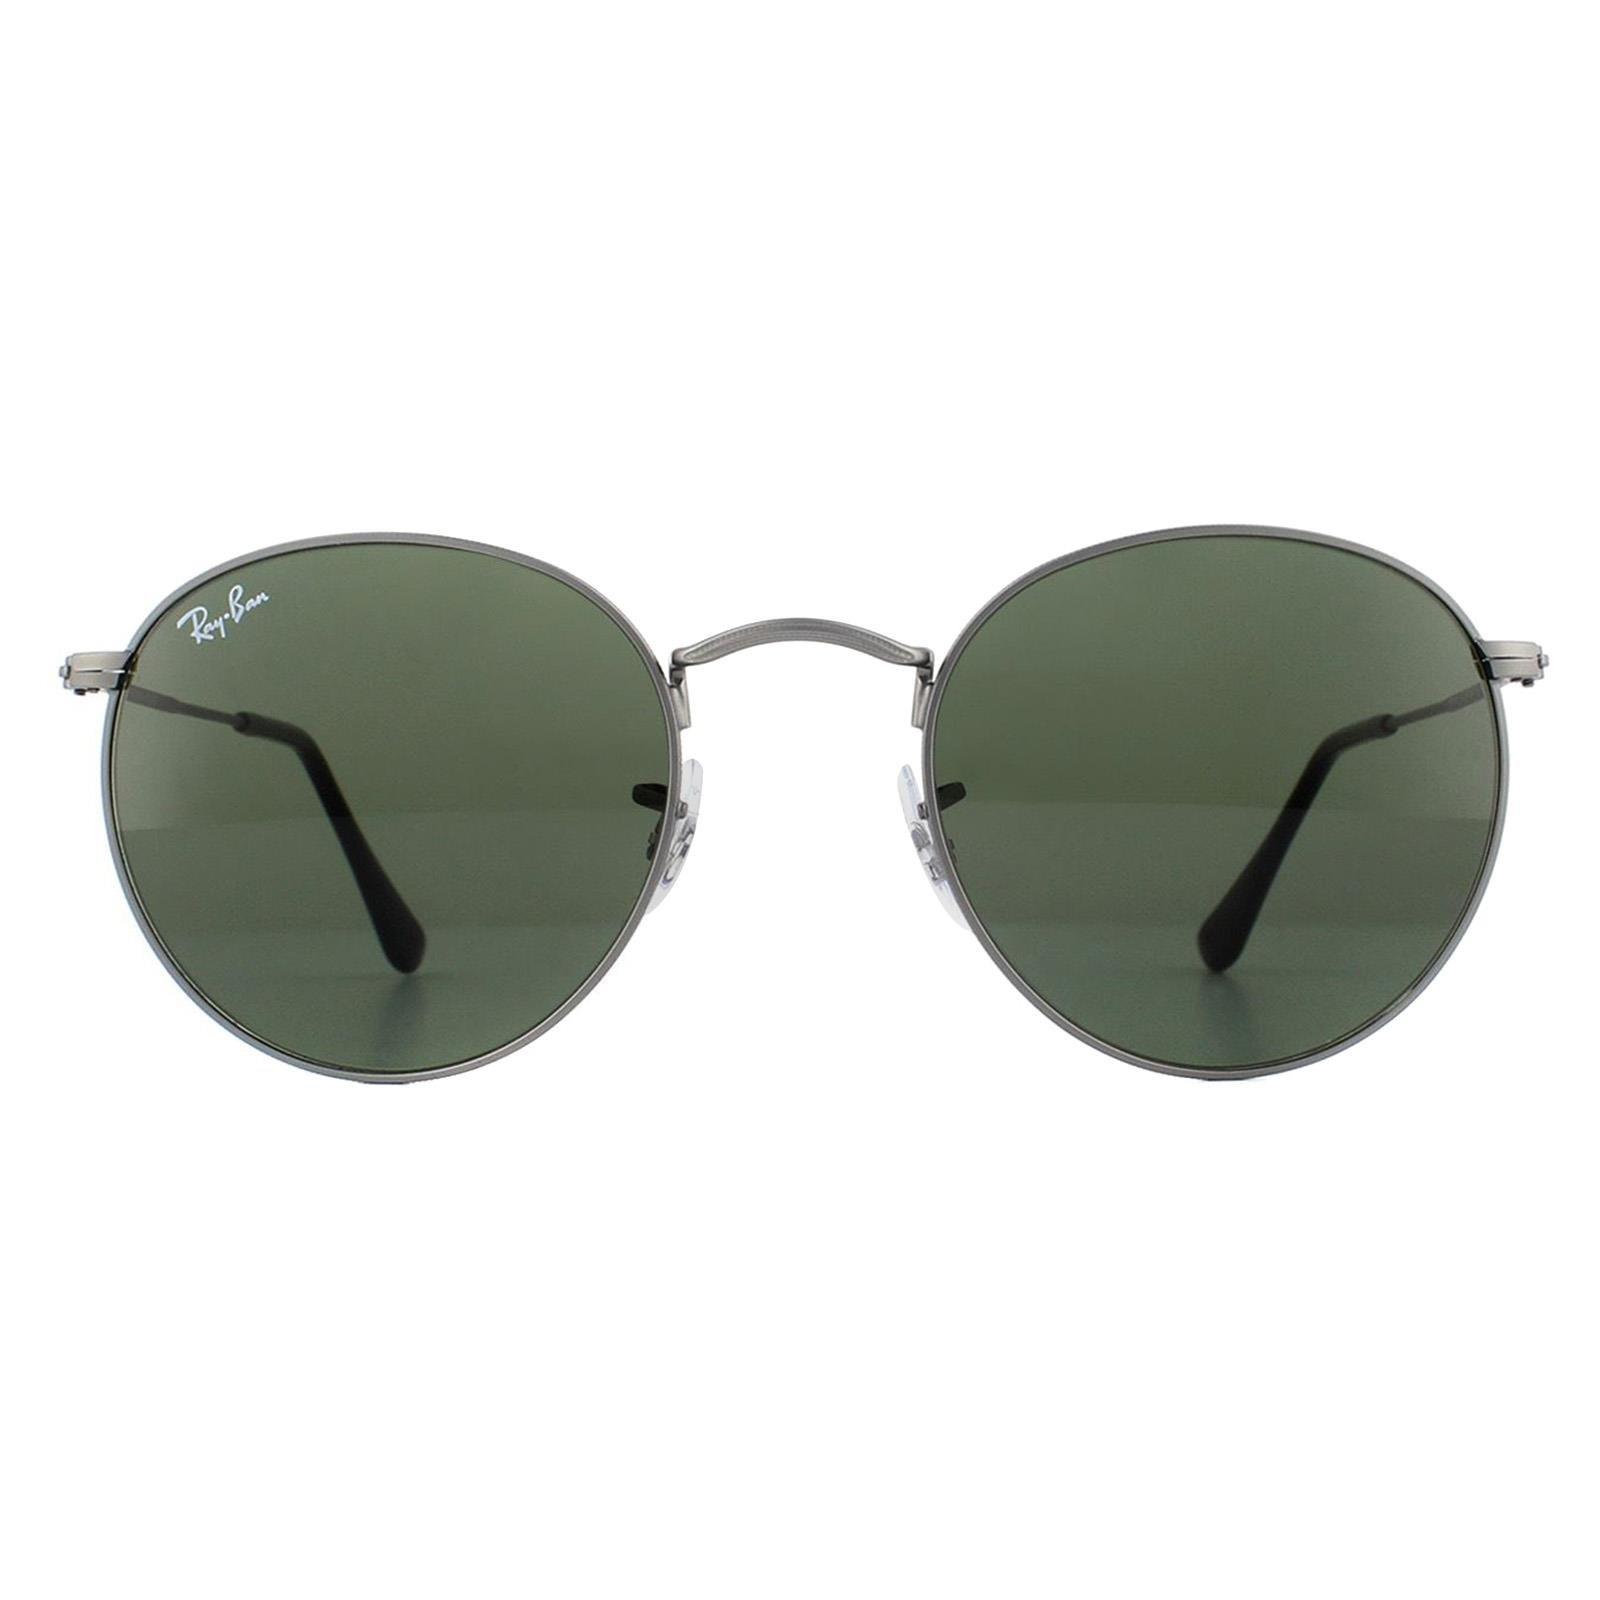 рэй коннолли быть джоном ленноном Круглые матовые зеленые солнцезащитные очки цвета бронзы Ray-Ban, серый